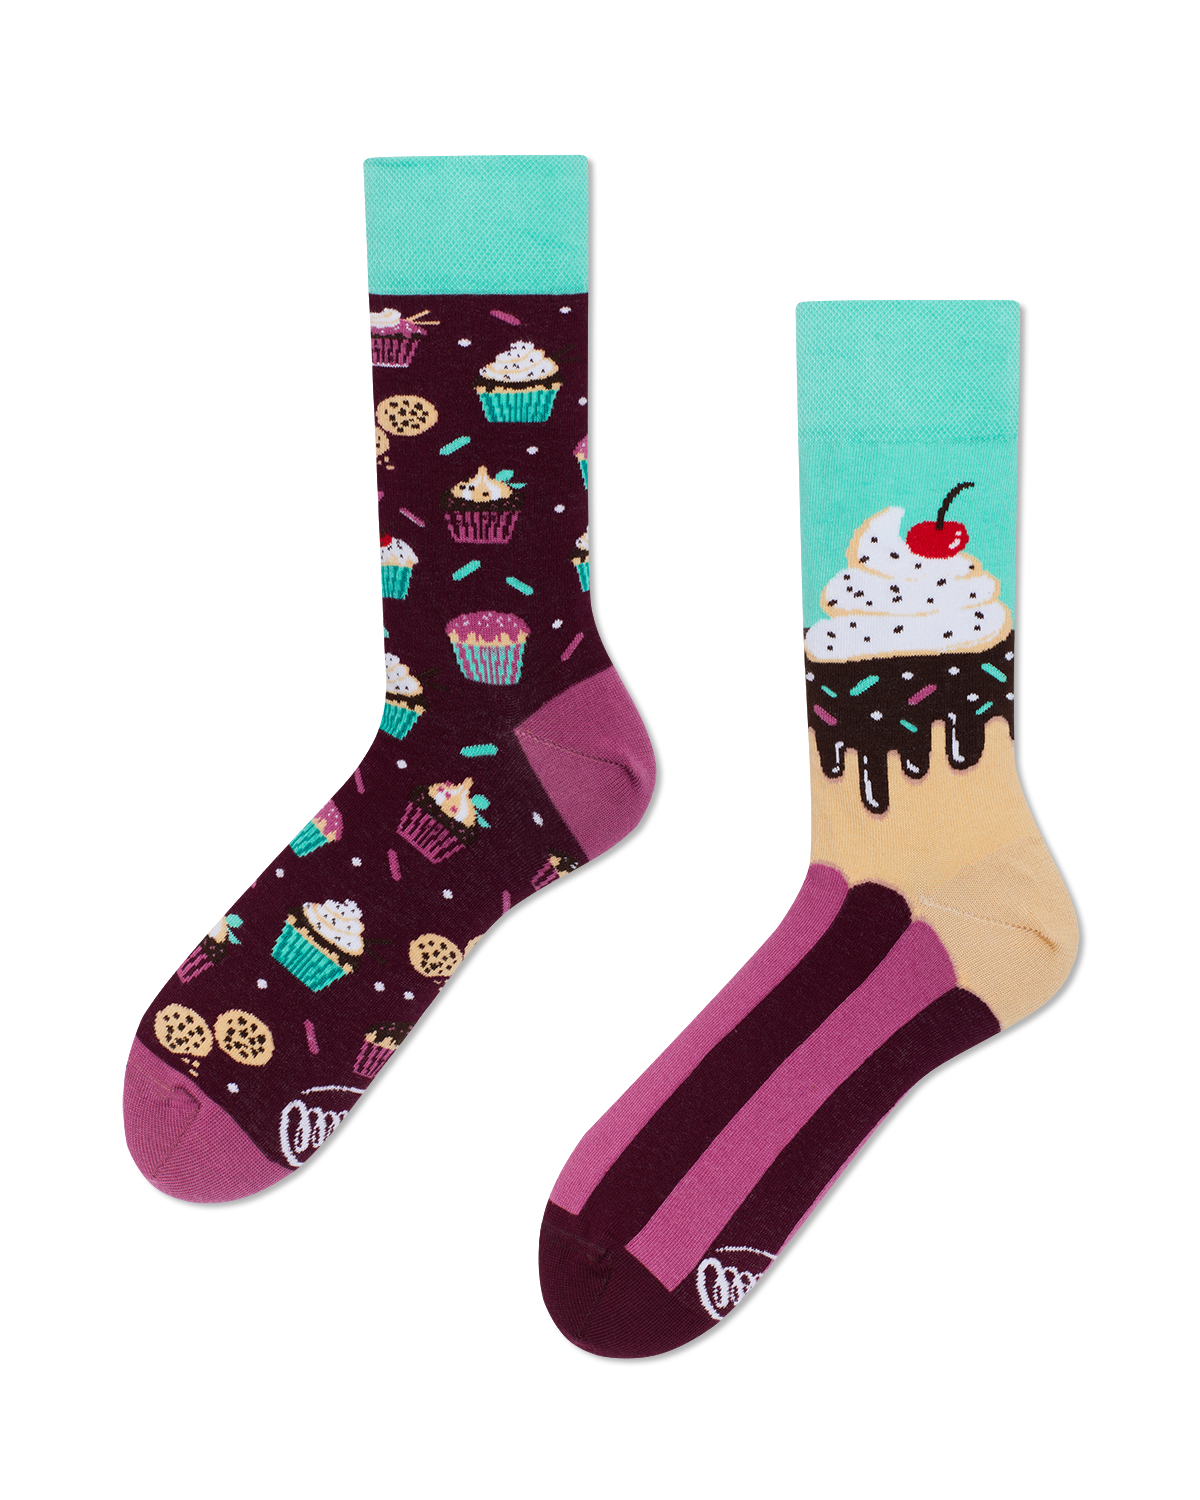 Cupcake Socken, Torten Socken, Motivsocken, Themensocken, Geschenkidee für Konditor.